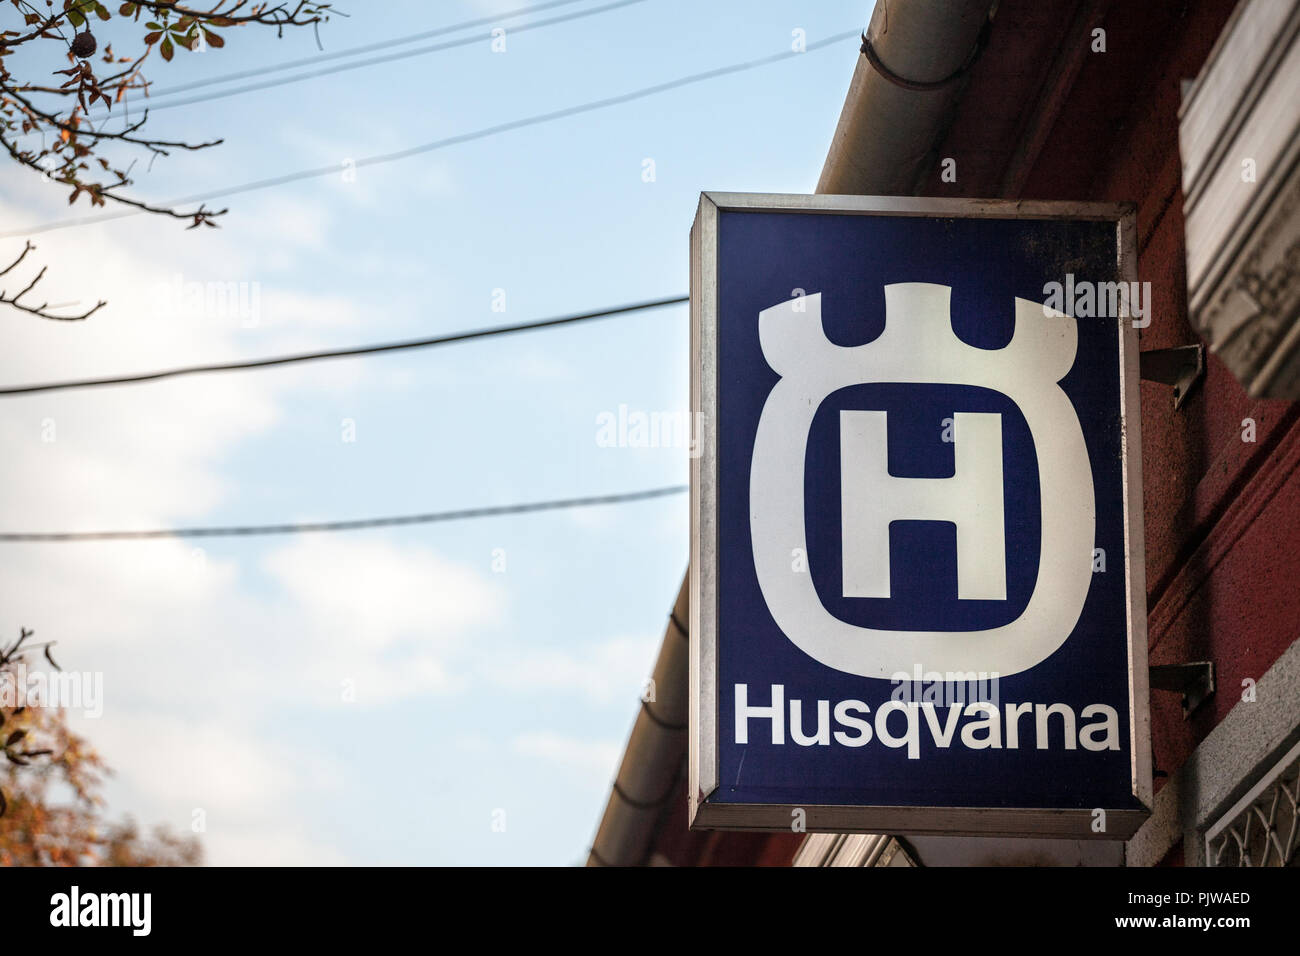 PANCEVO, SERBIE - septembre 8, 2018 : Husqvarna logo sur leur magasin principal à Pancevo. Husqvarna est un fabricant suédois de produits pour l'extérieur jeu Banque D'Images